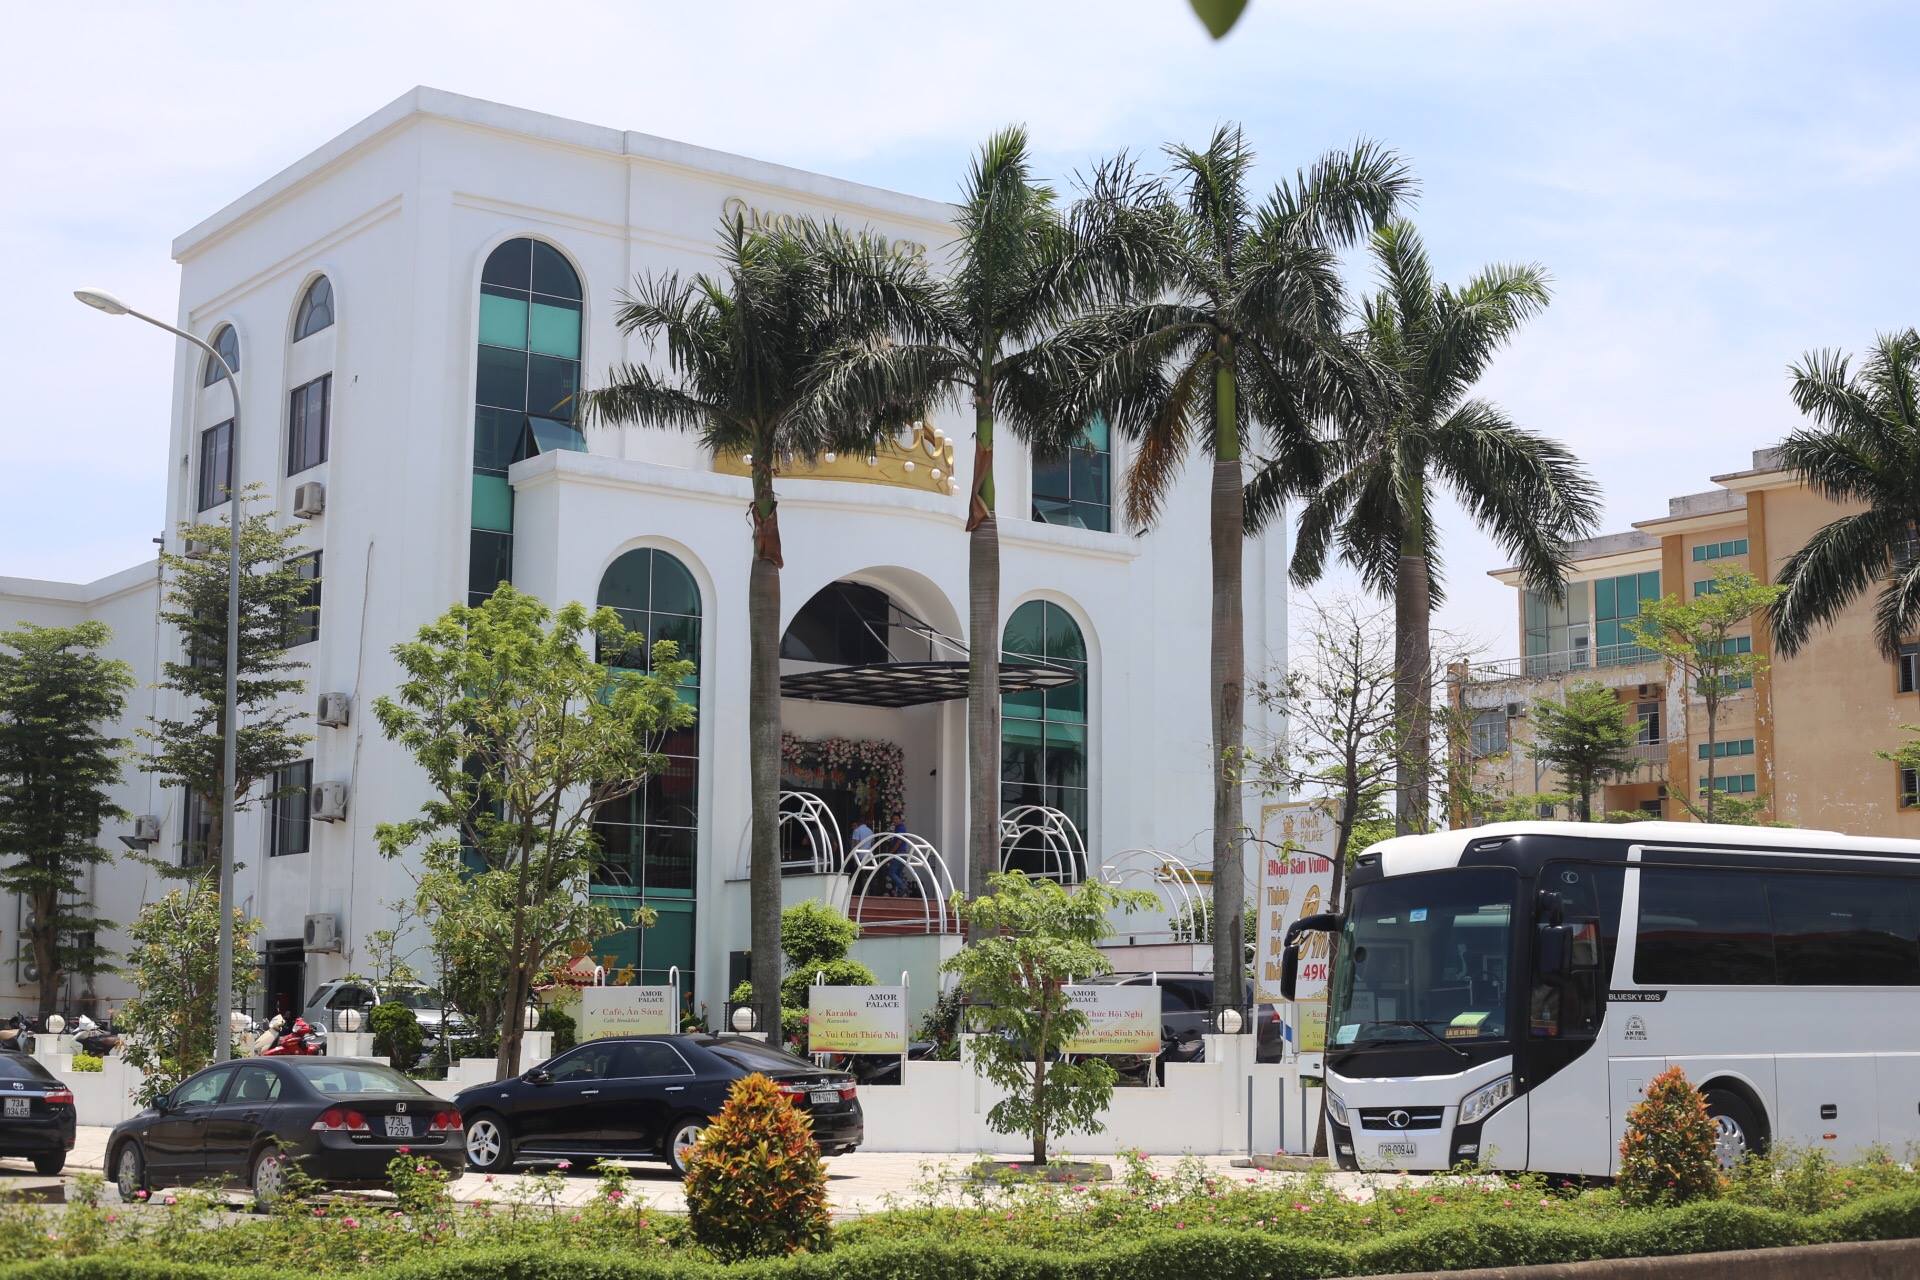 Amor Palace – Trung tâm dịch vụ, nhà hàng quy mô và hiện đại của Quảng Bình